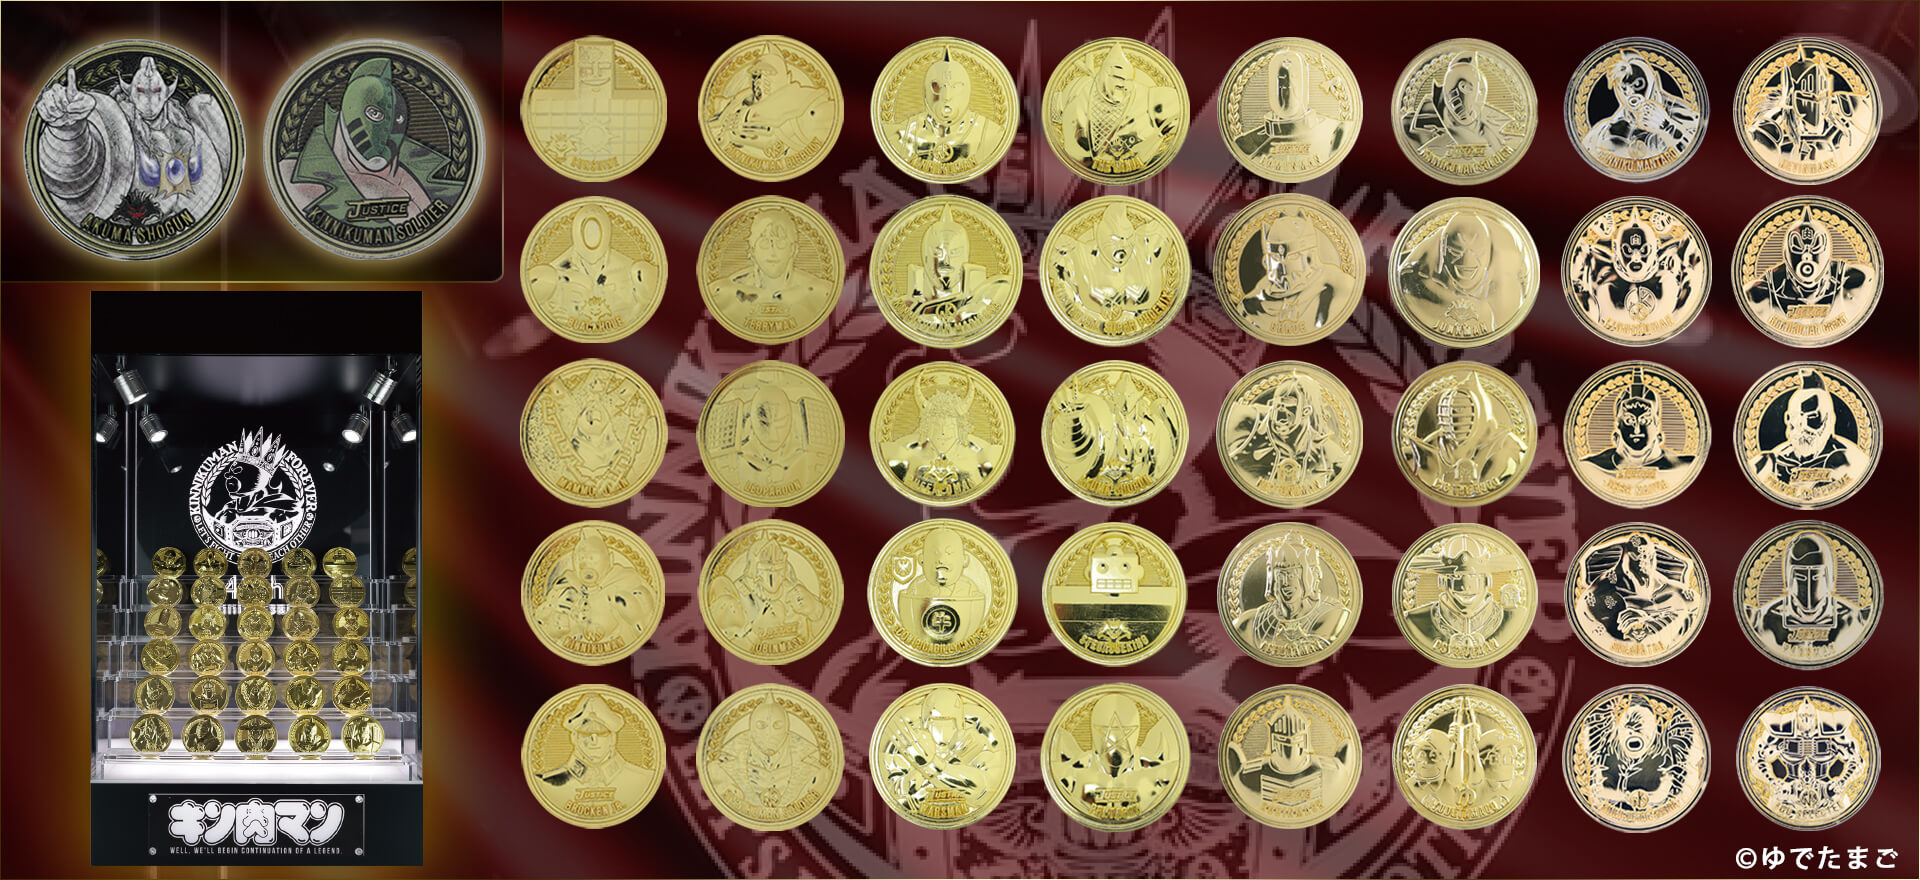 キン肉マンメダルコレクションDXディスプレイケース KIN(金)肉メダルスペシャルセット (KIN(金)肉メダル 30種付き)